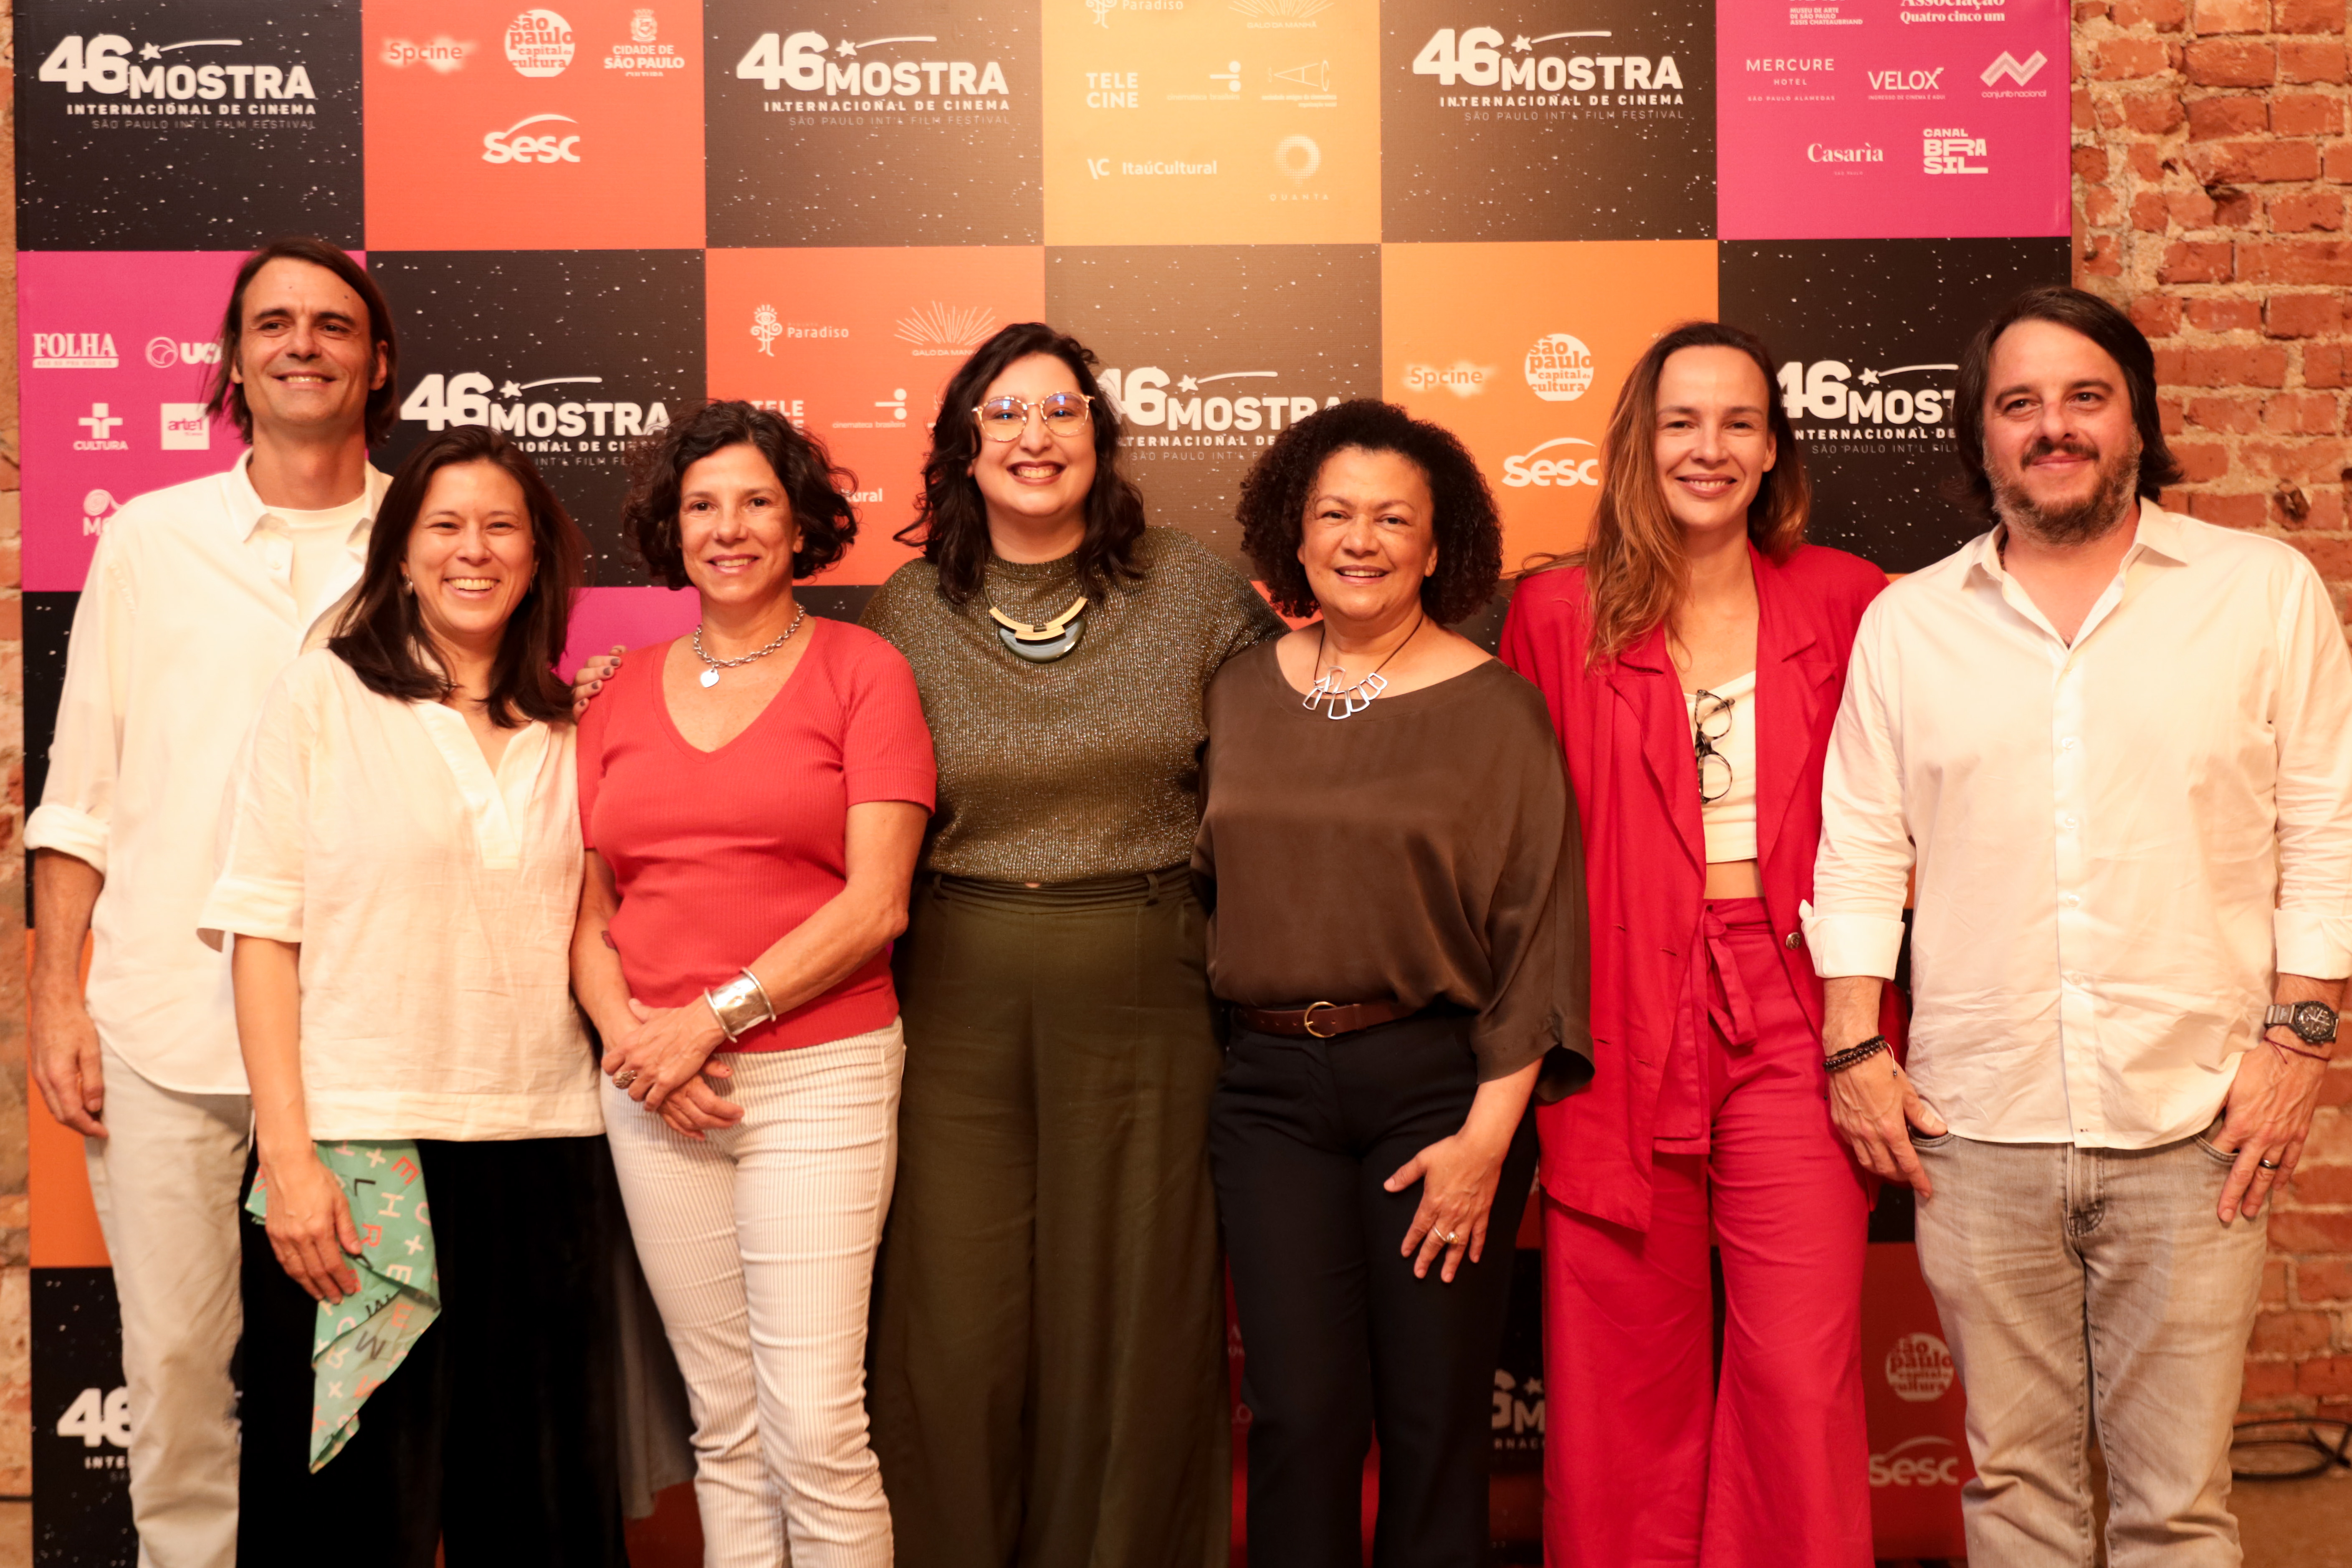 Produtoras brasileiras assinam compromisso para igualdade entre mulheres e homens no audiovisual/pacto de midia noticias igualdade de genero geracao igualdade 